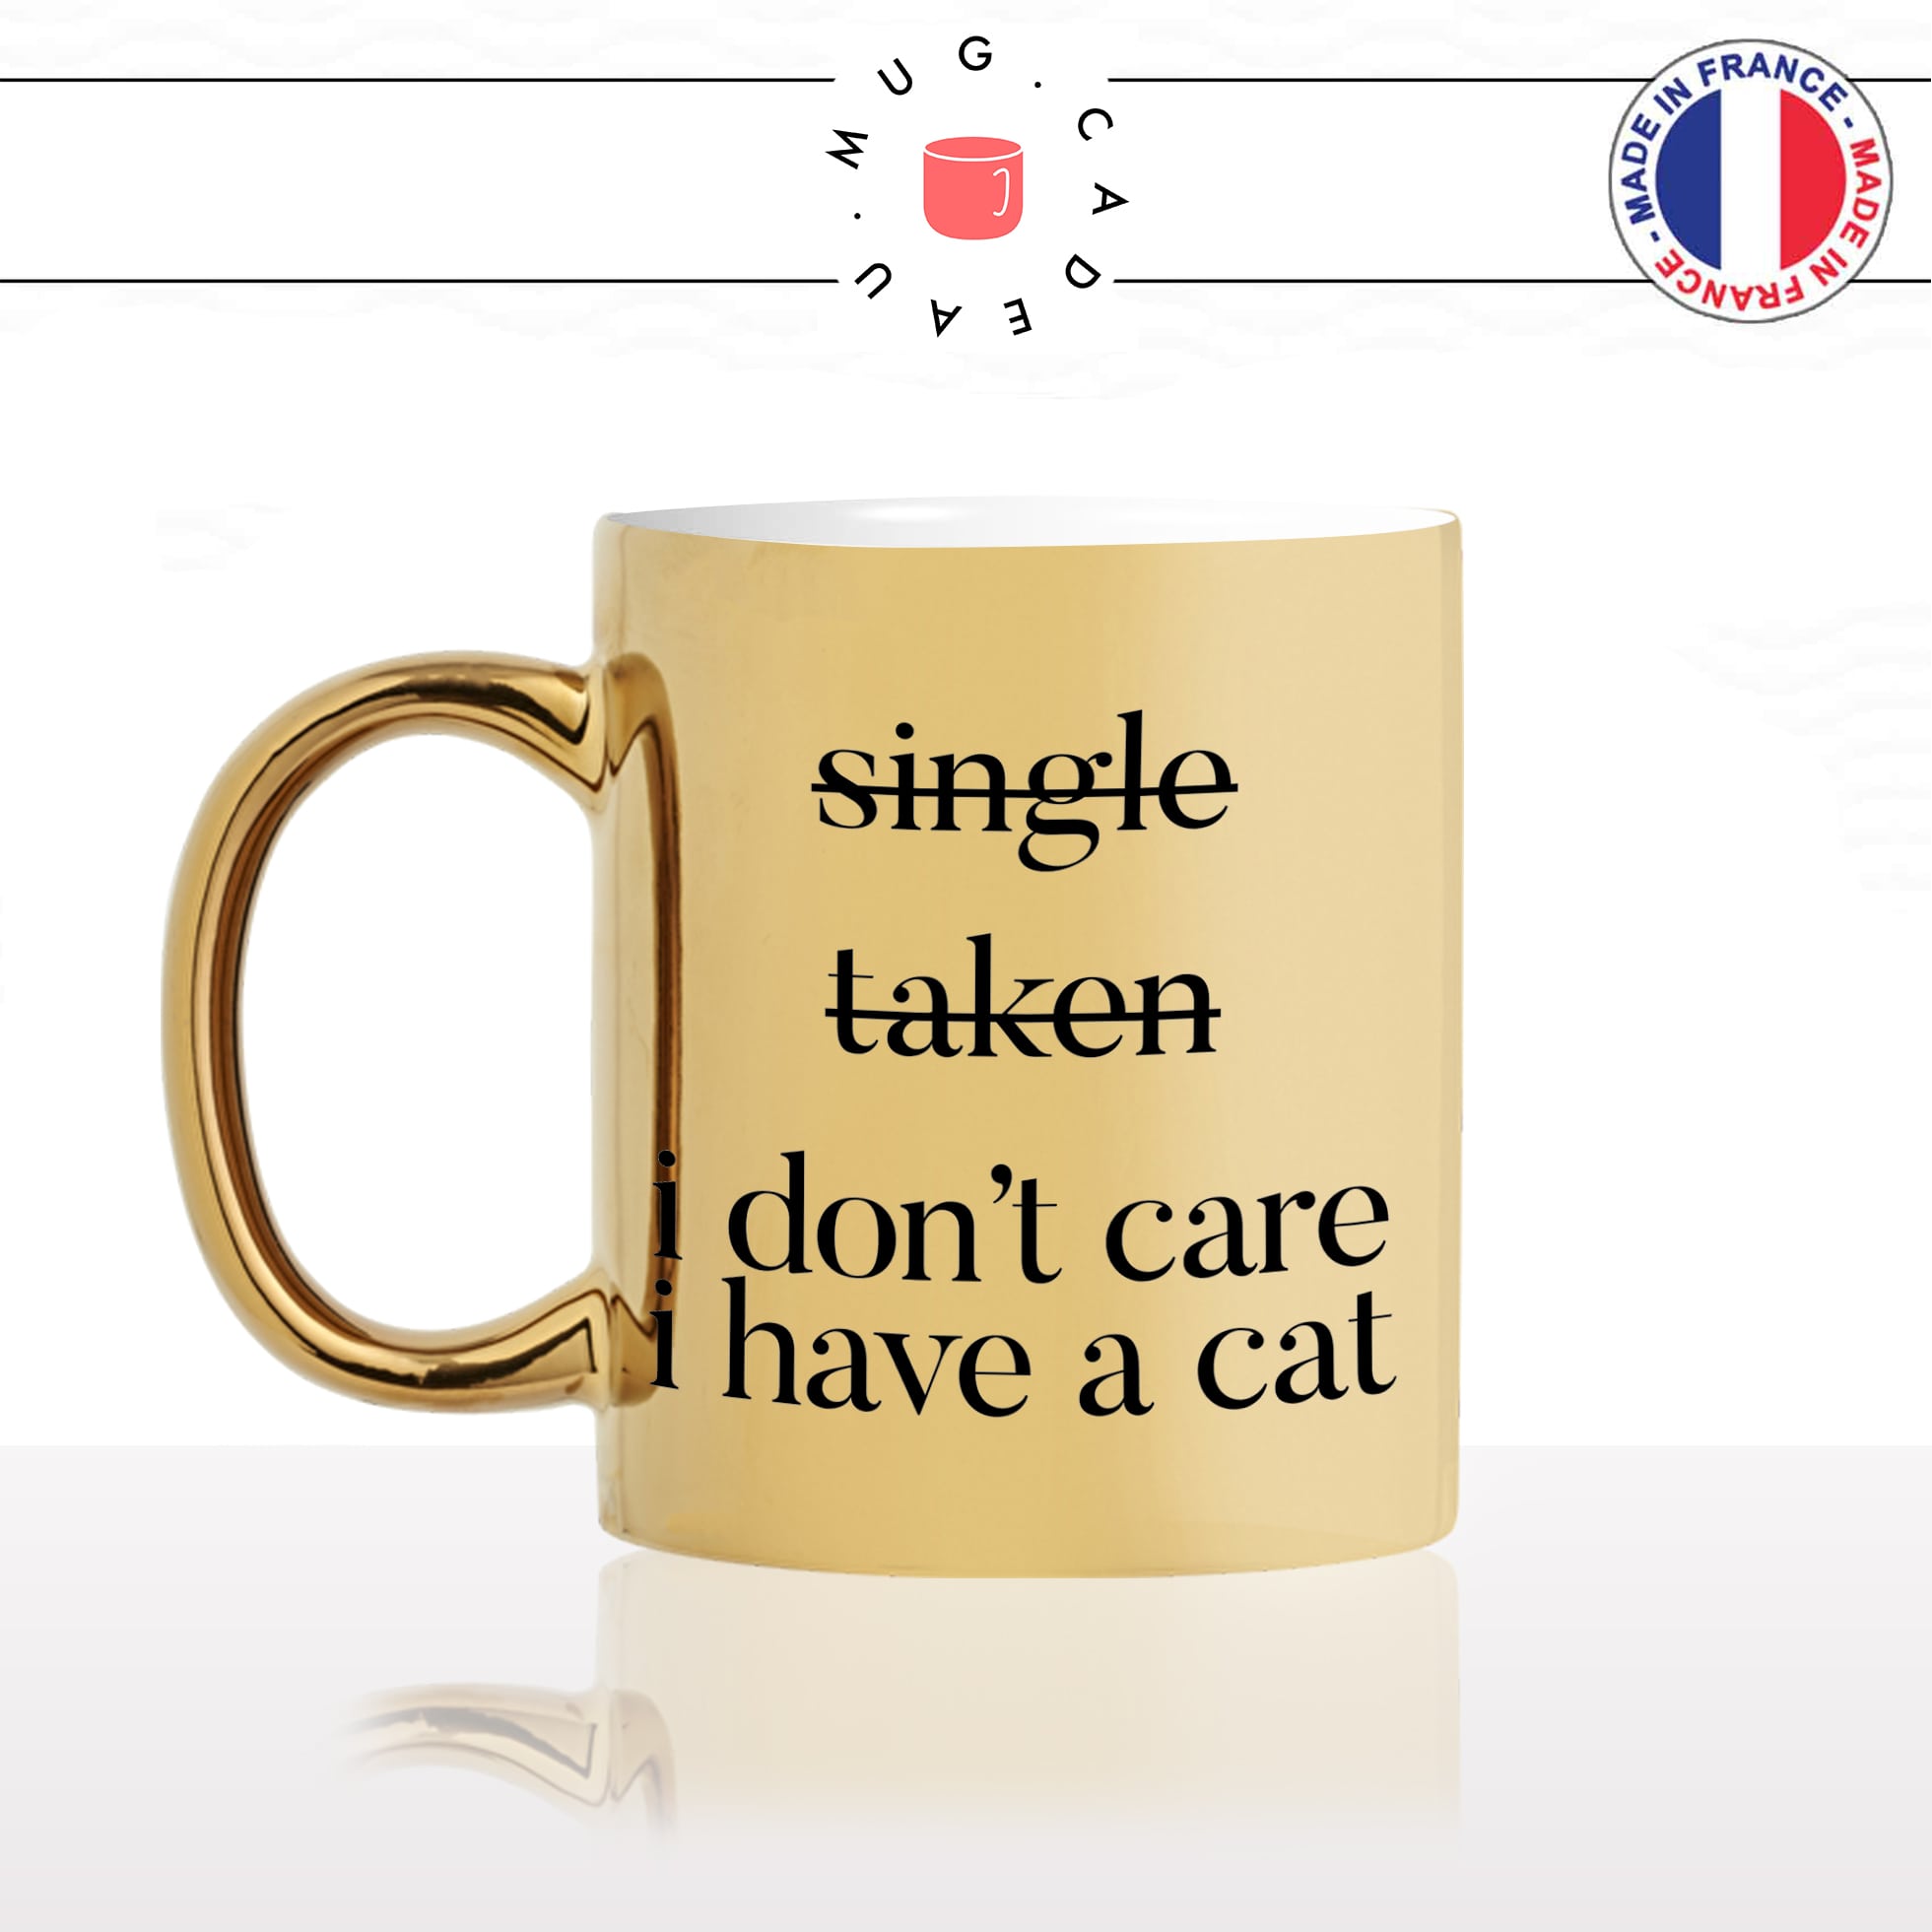 mug-tasse-doré-or-gold-single-taken-i-dont-care-cat-chat-chaton-célibataire-en-couple-cool-humour-fun-idée-cadeau-personnalisé-café-thé-min